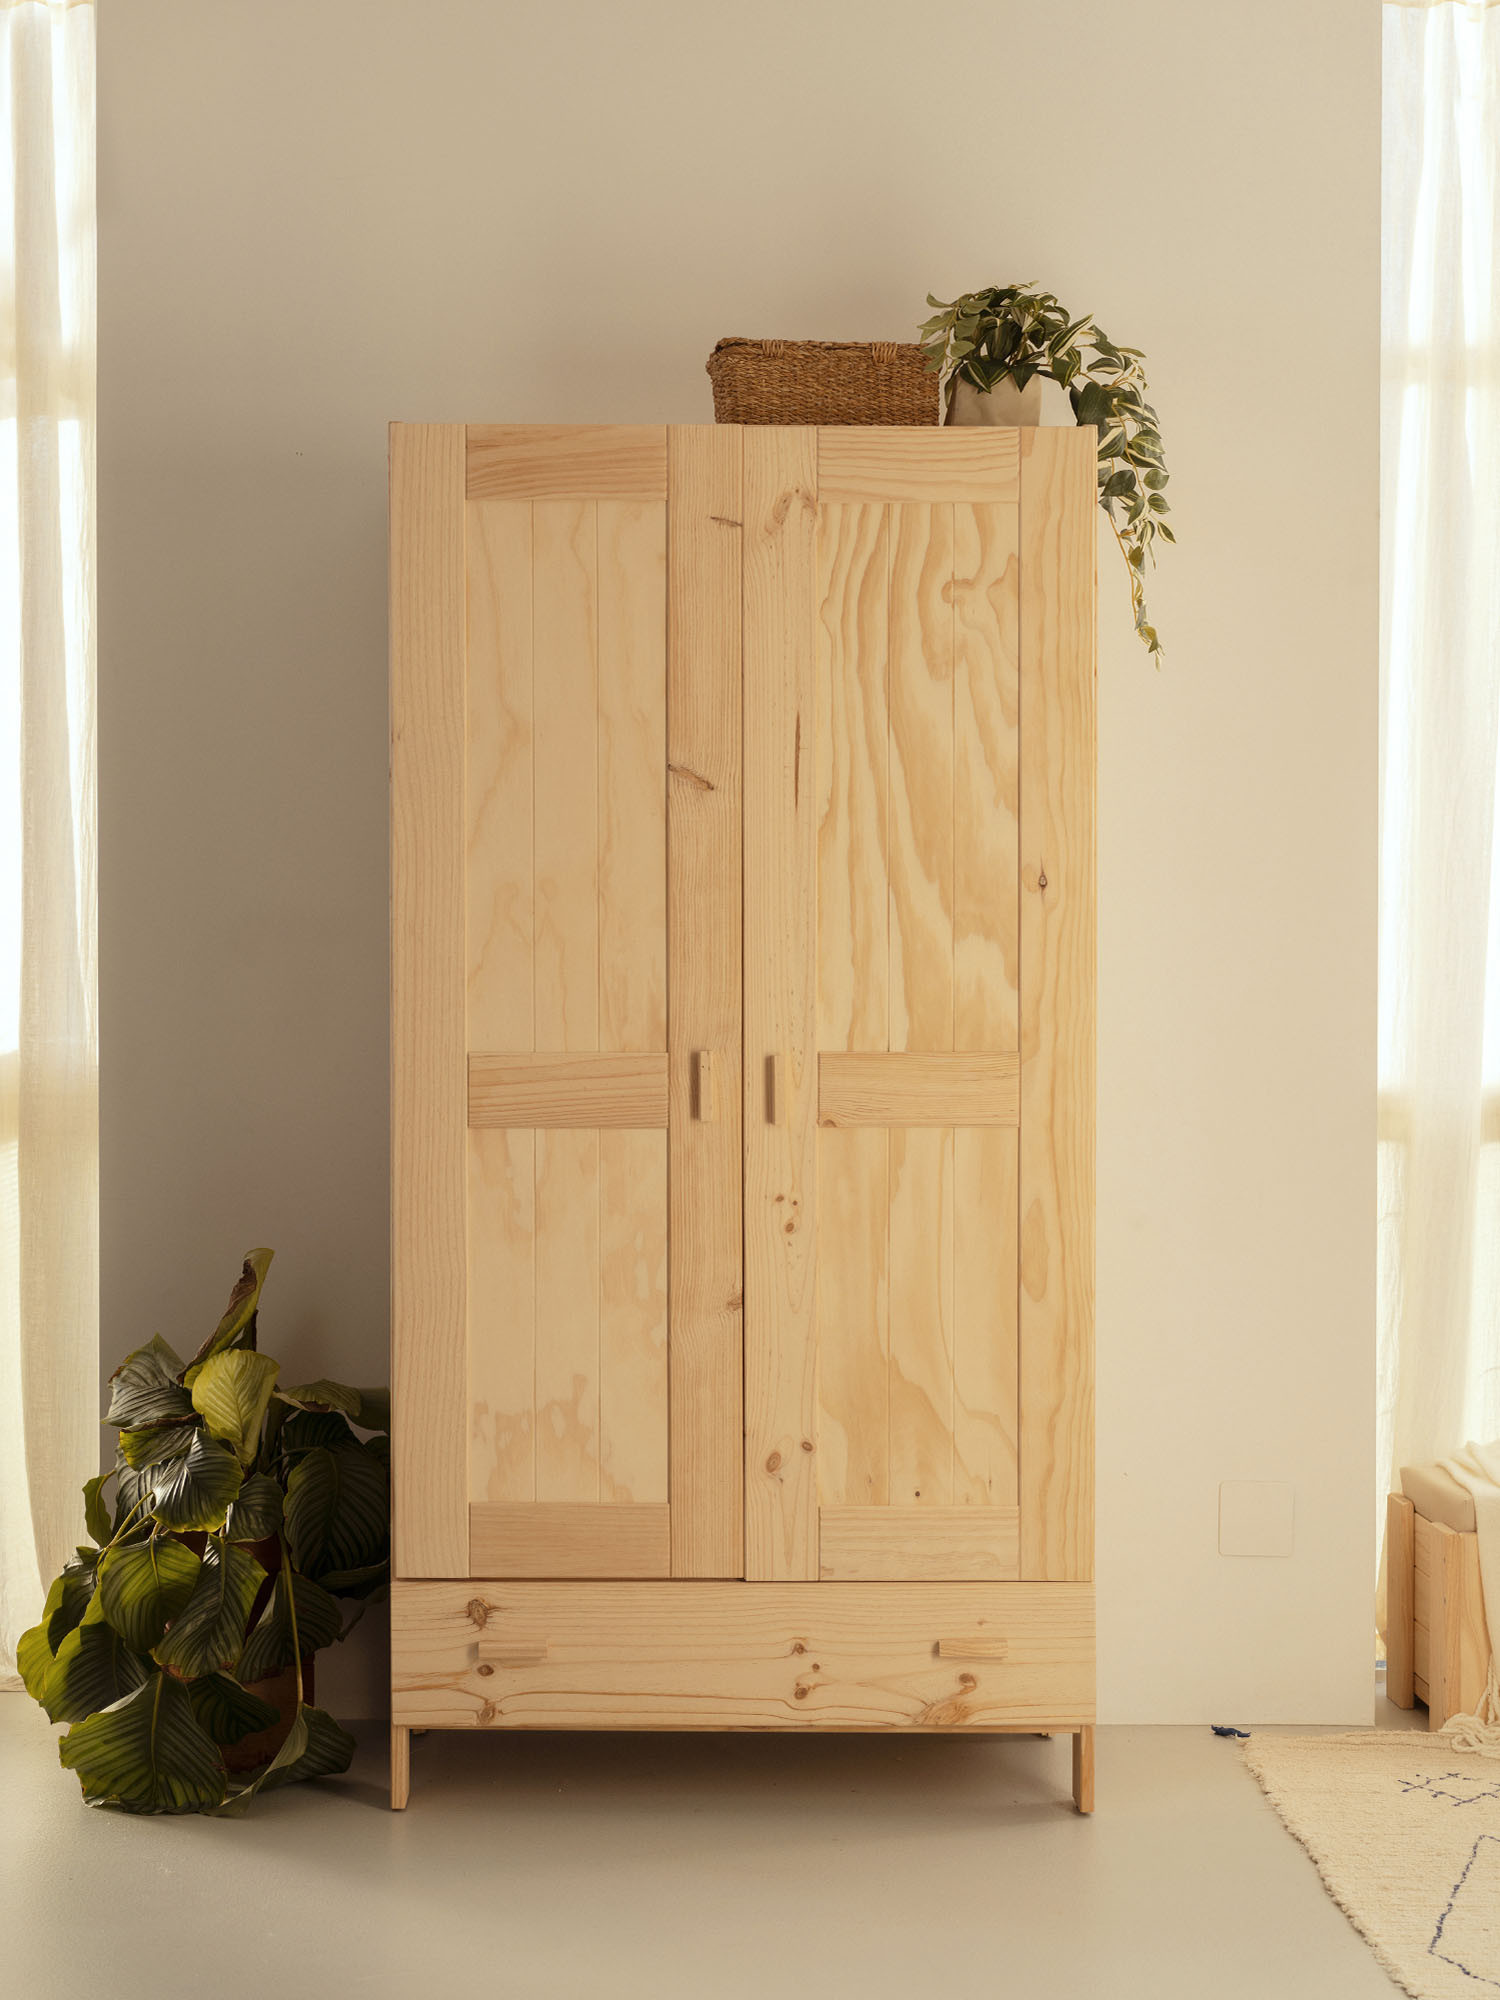 Tipos de madera para tus armarios - Timber Armarios